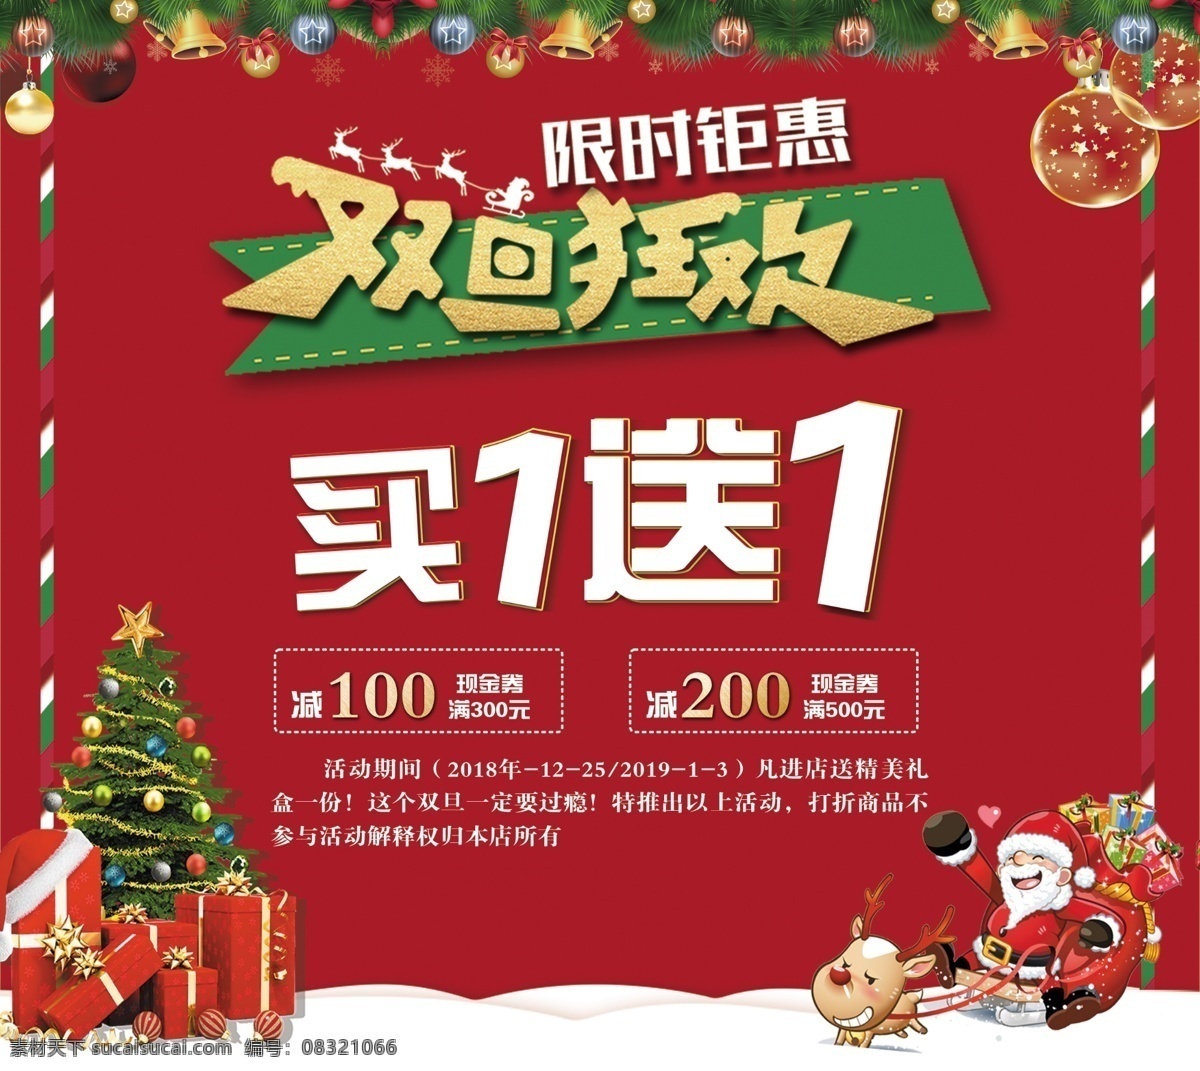 双 旦 节 圣诞 元旦 海报 买一送一 促销 圣诞老人 2018 双旦节